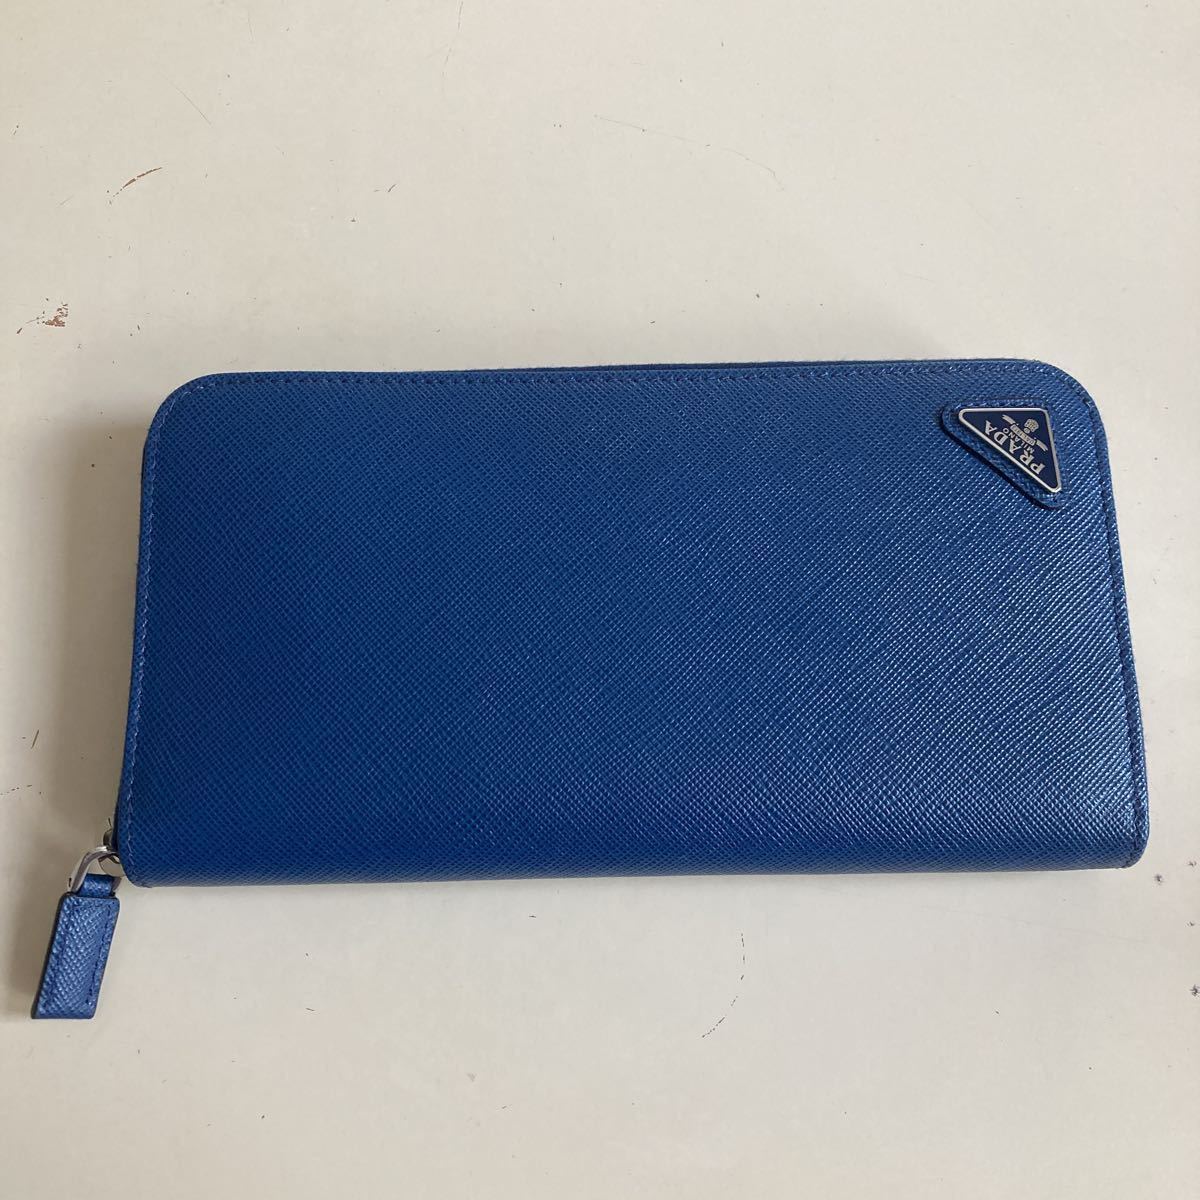 プラダ 長財布 サフィアーノトライアングルロゴ ブルー メンズ PRADA 2ML317 QHH F0016 新品・未使用品 ラベンダーのハンカチ付き  メンズファッション 財布